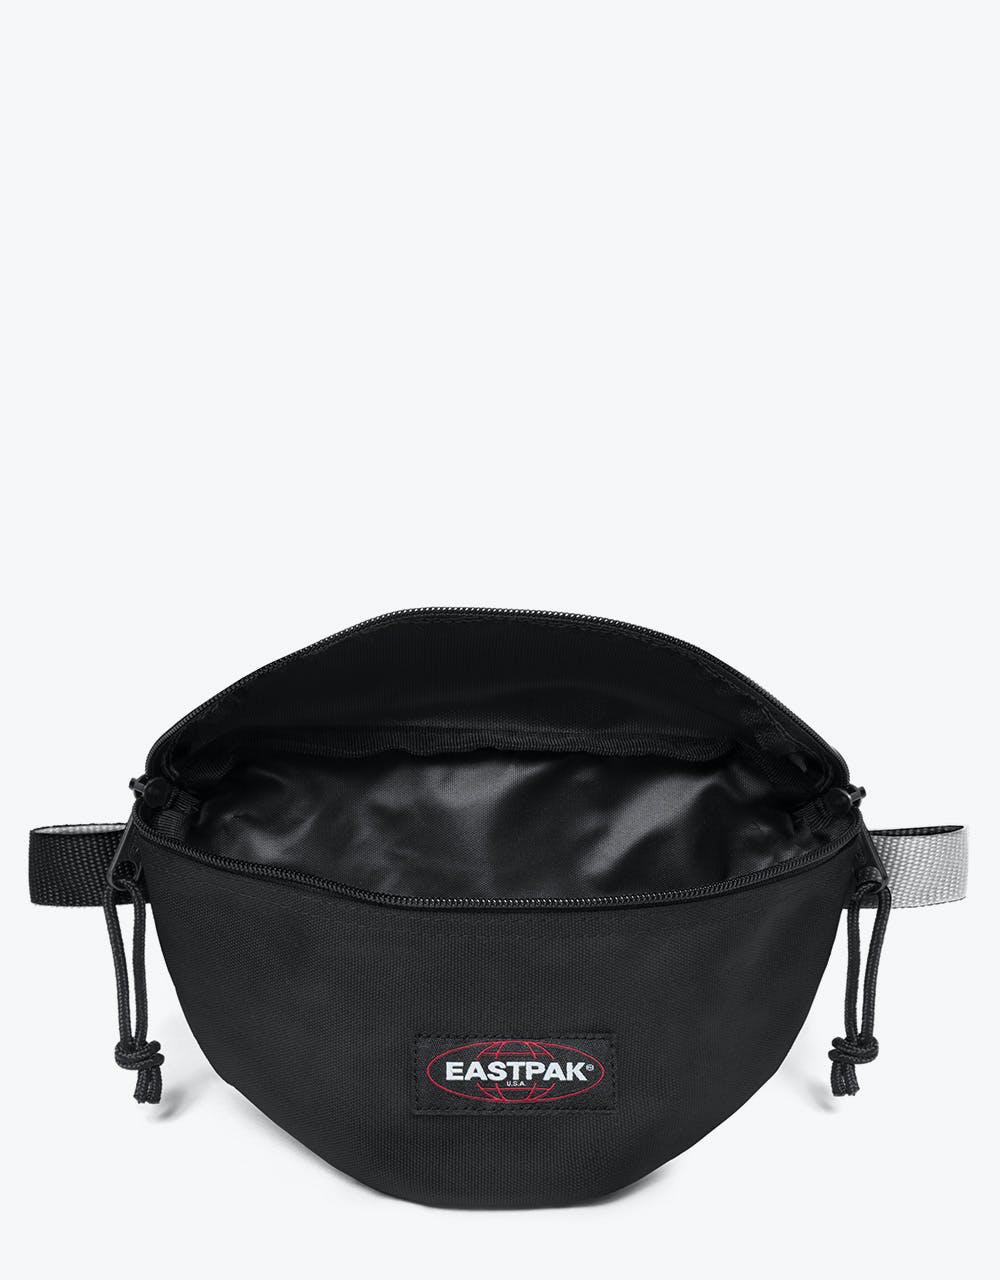 Eastpak Springer Cross Body Bag - Blakout Black/White